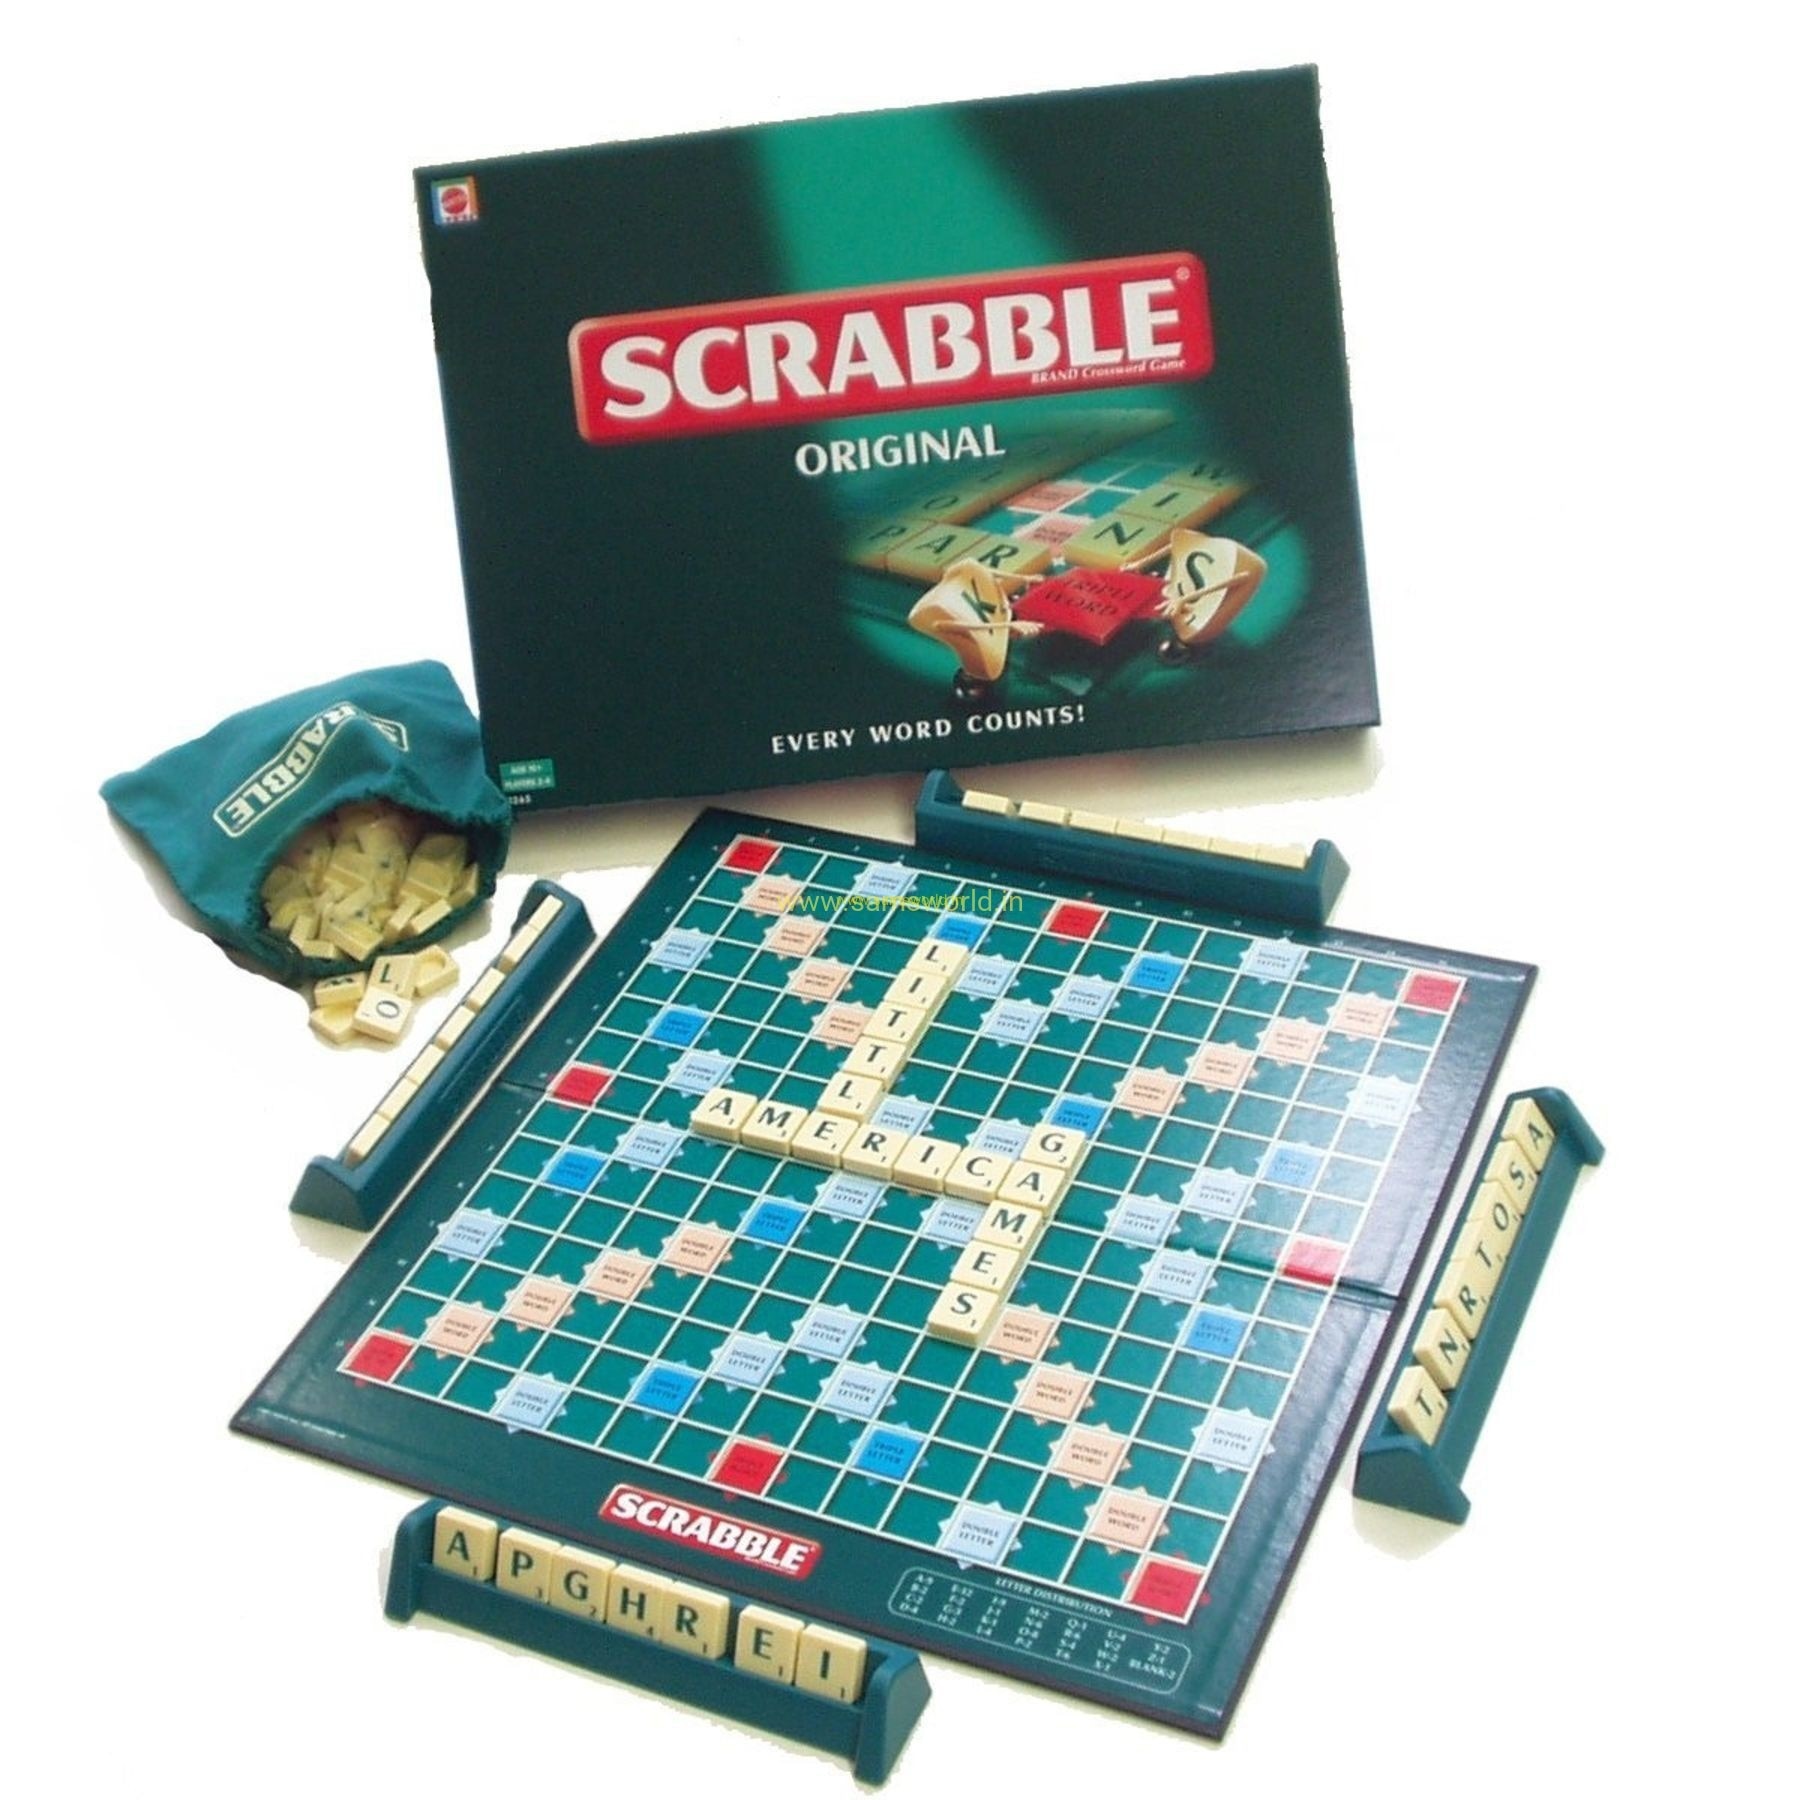 Monopoly + Scrabble - jocuri de societate pentru copii si adulti